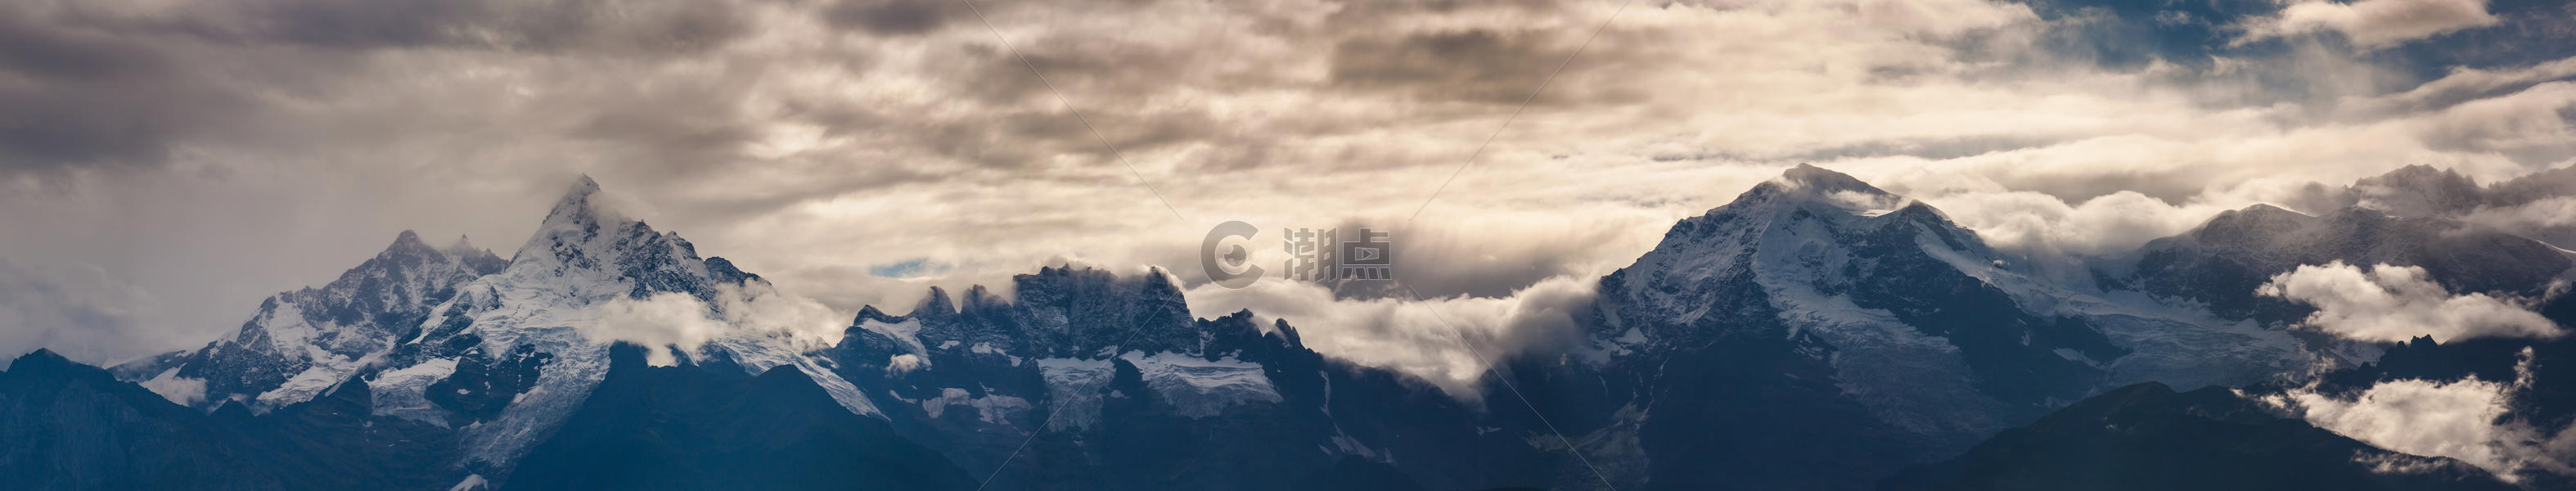 梅里雪山三峰图片素材免费下载